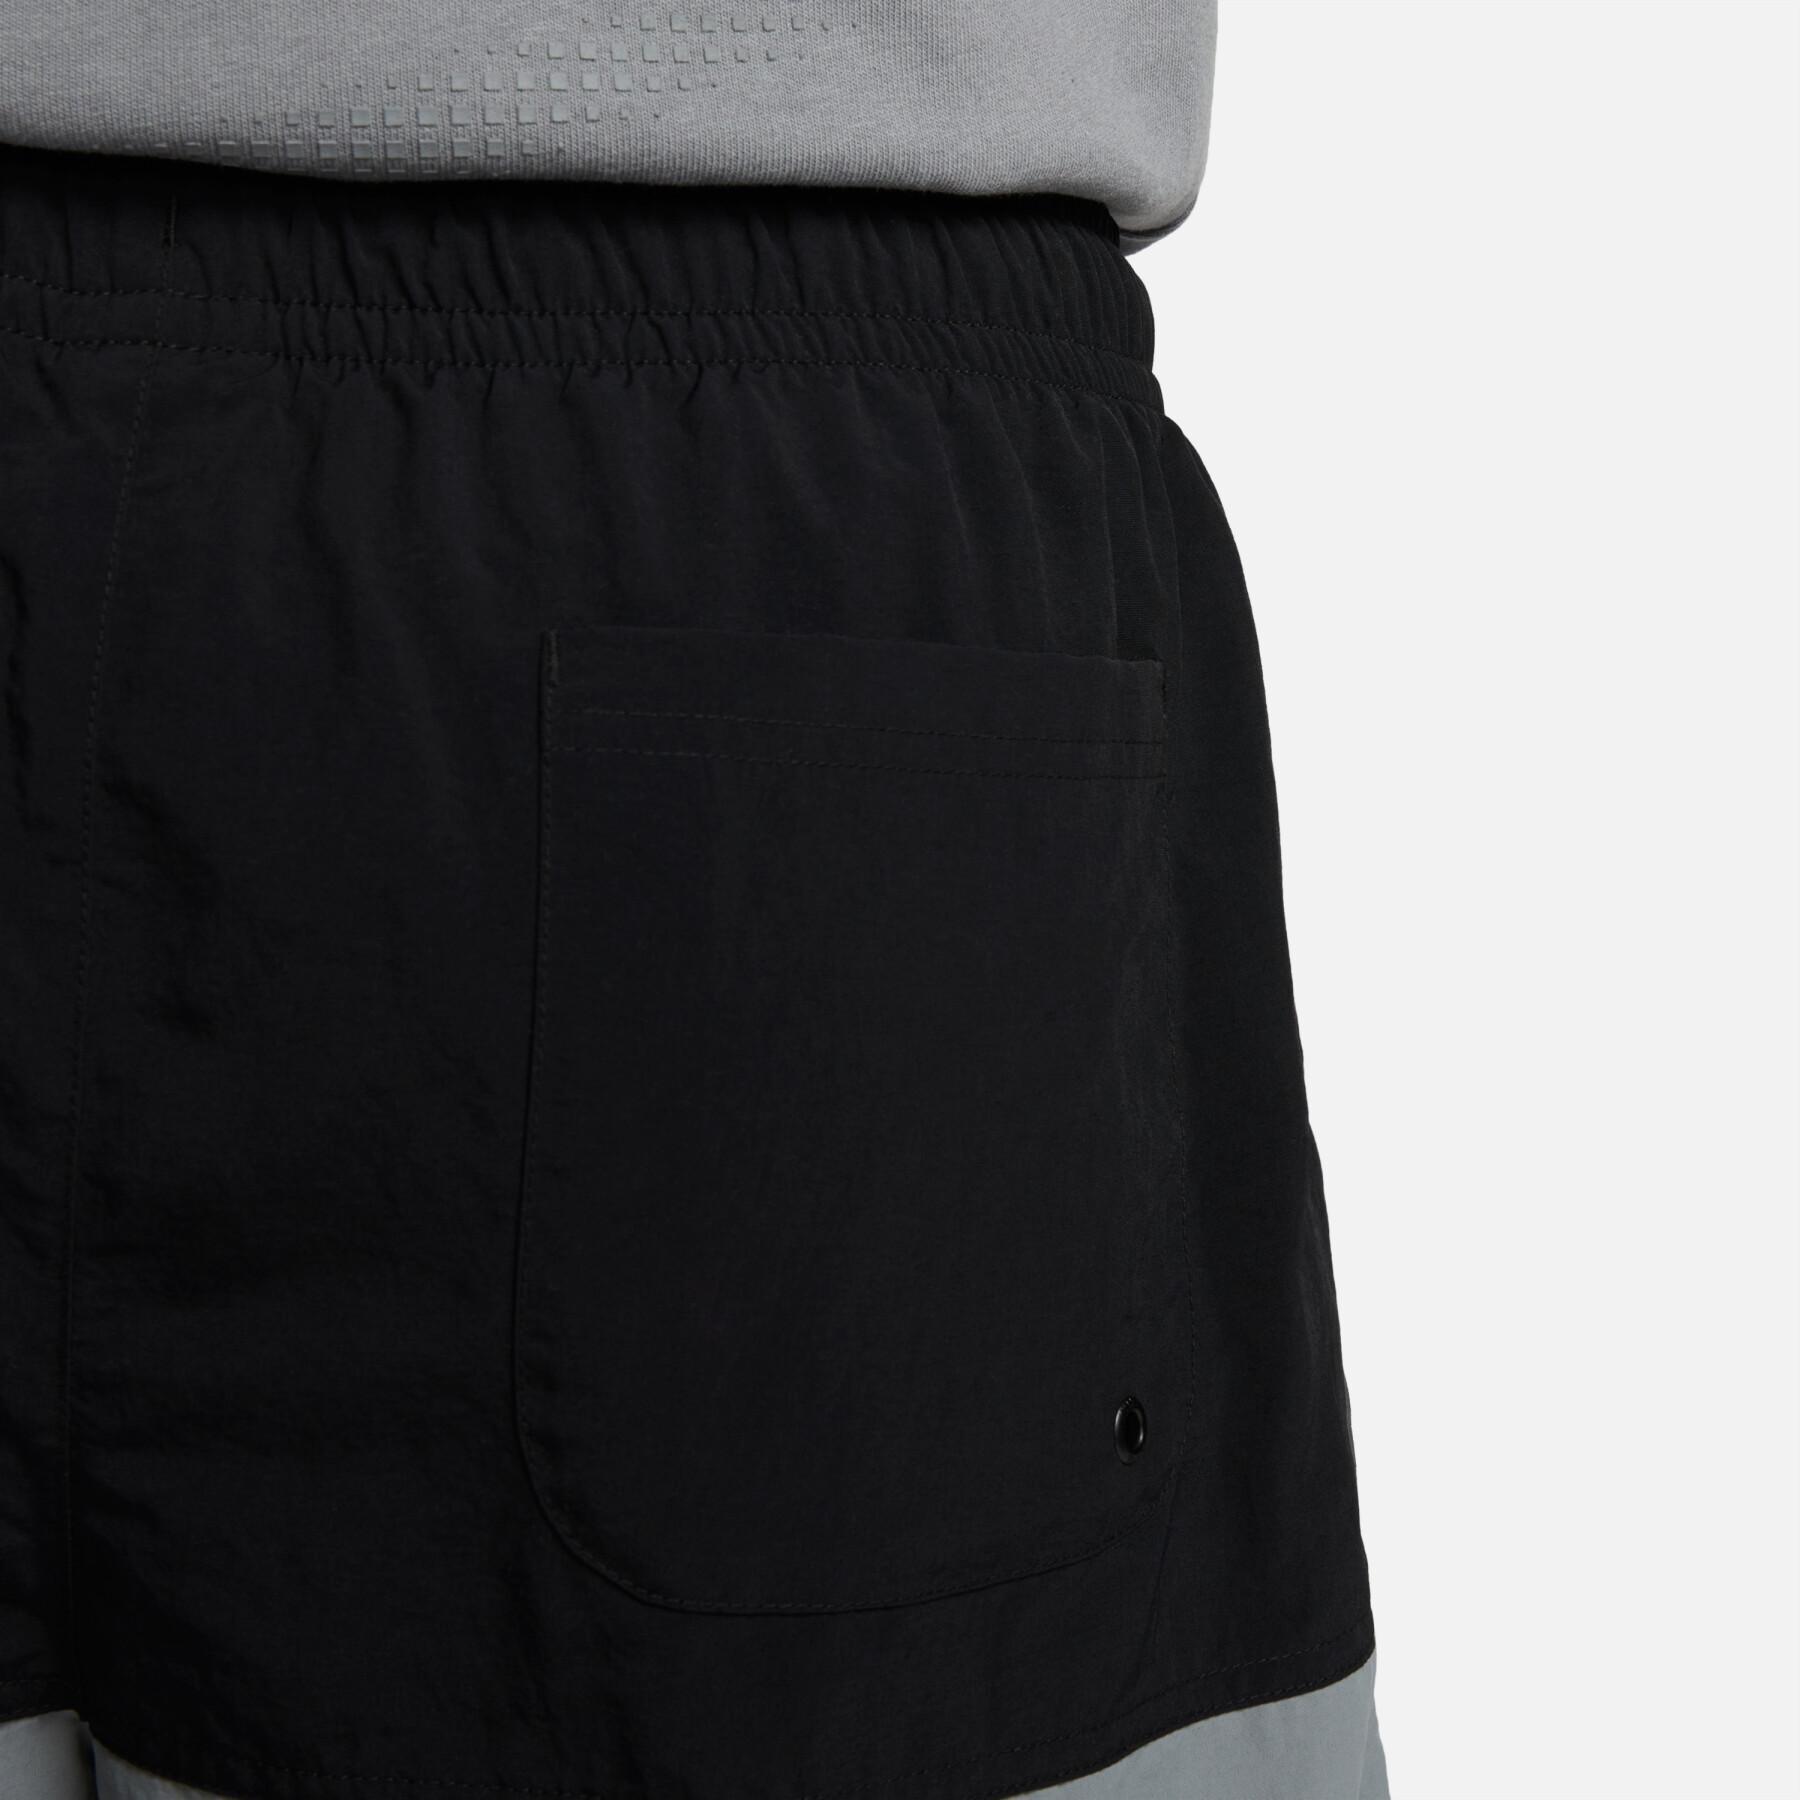 Pantaloncini corti in tessuto Nike Club+ CB